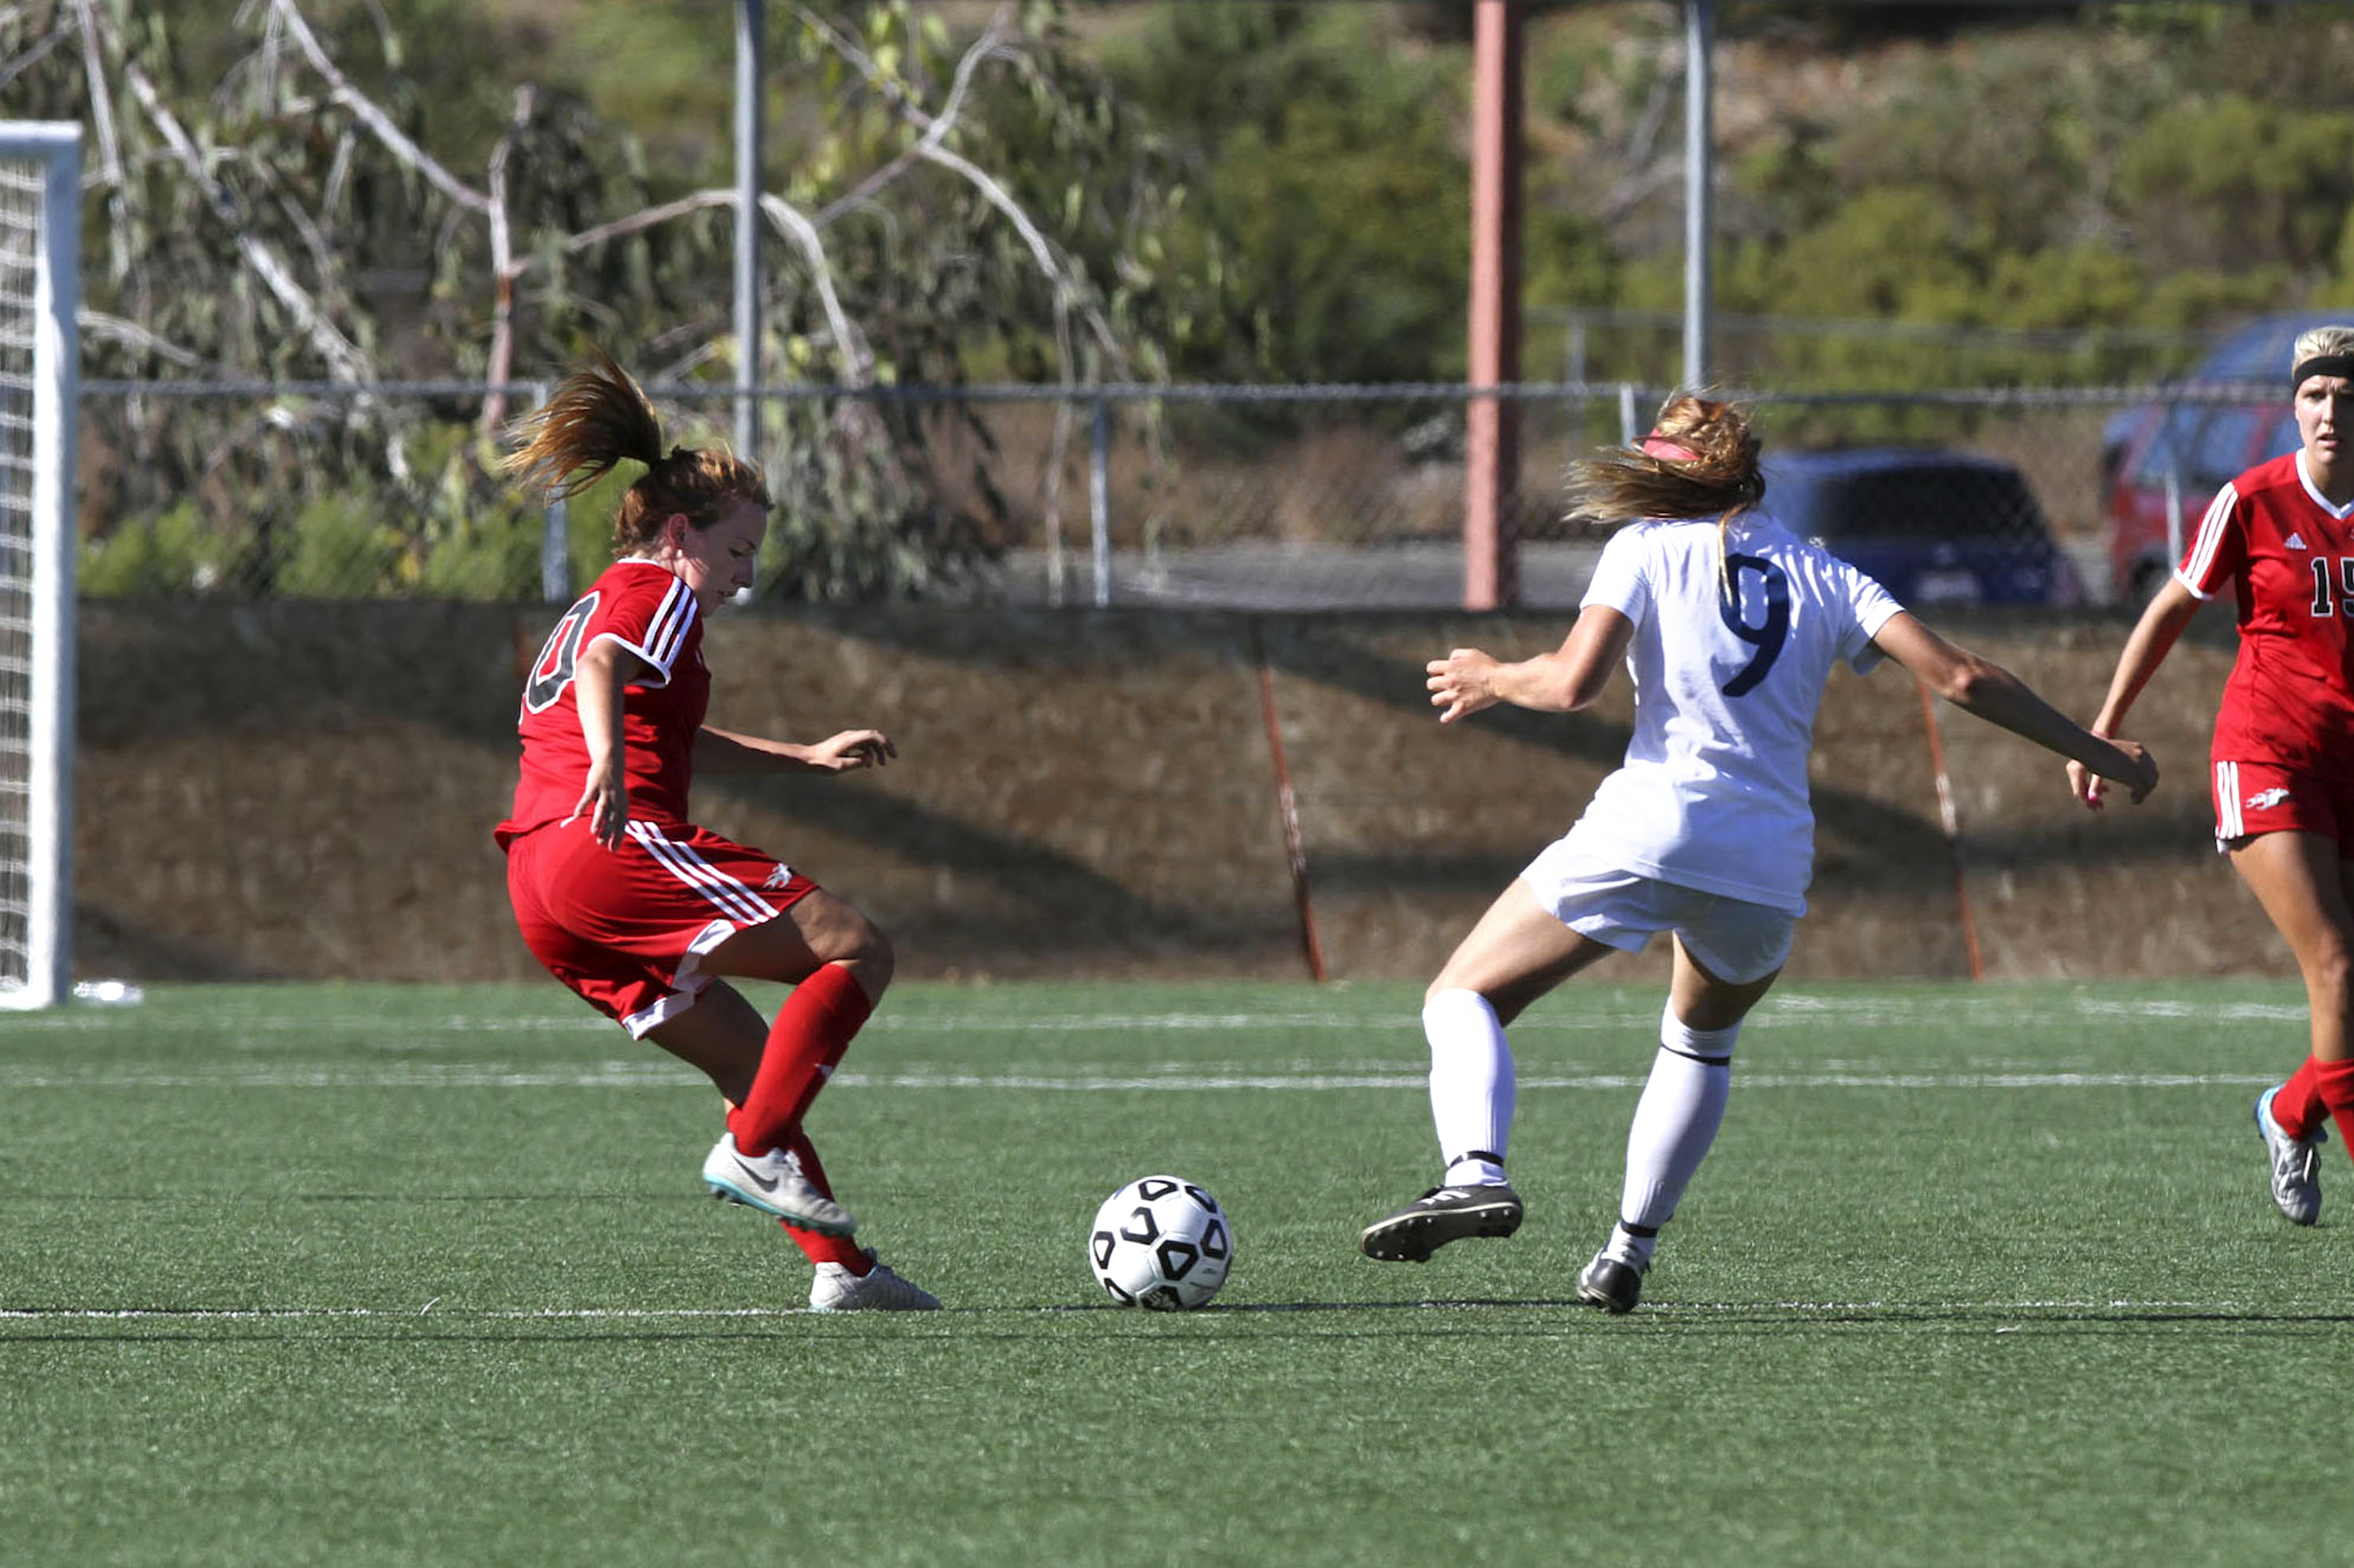 Palomar midfielder Kiatlyn Crone fights for the ball. (Marcela Alauie/The Telescope)